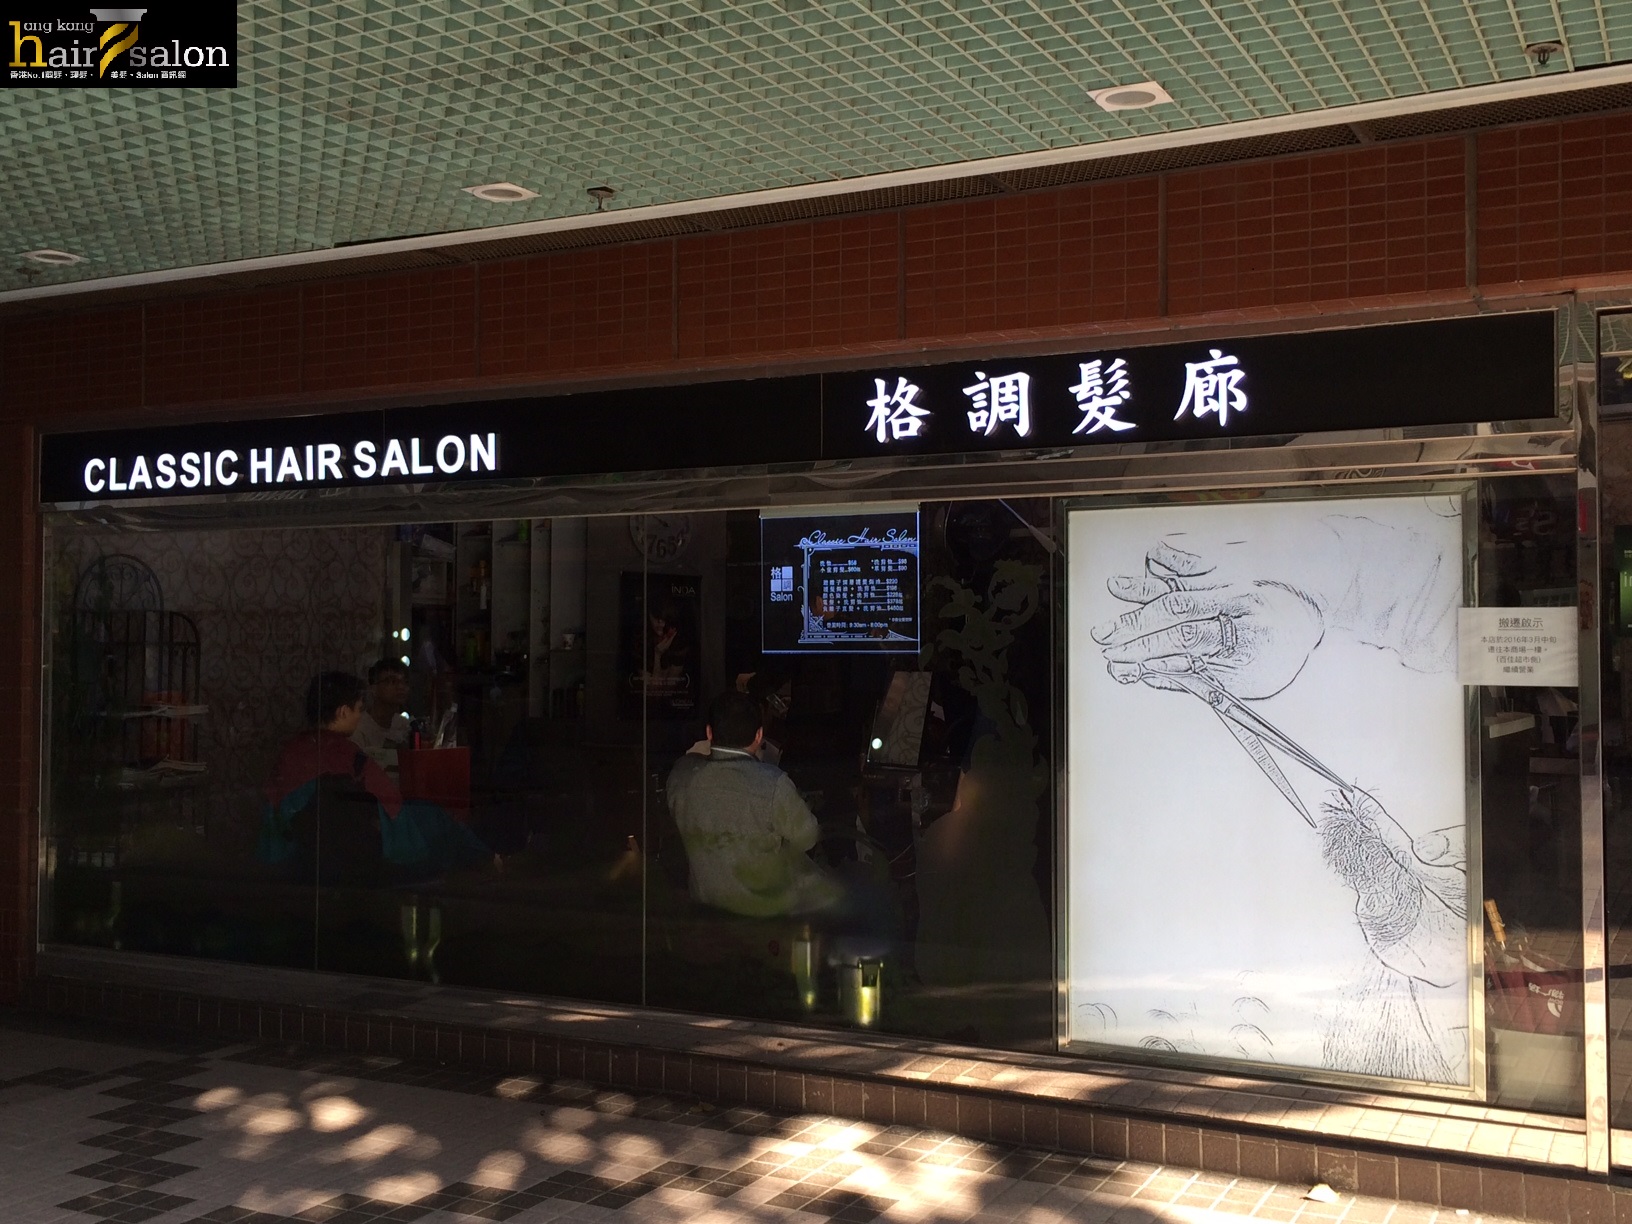 Haircut: 格調髮廊 Classic Hair Salon